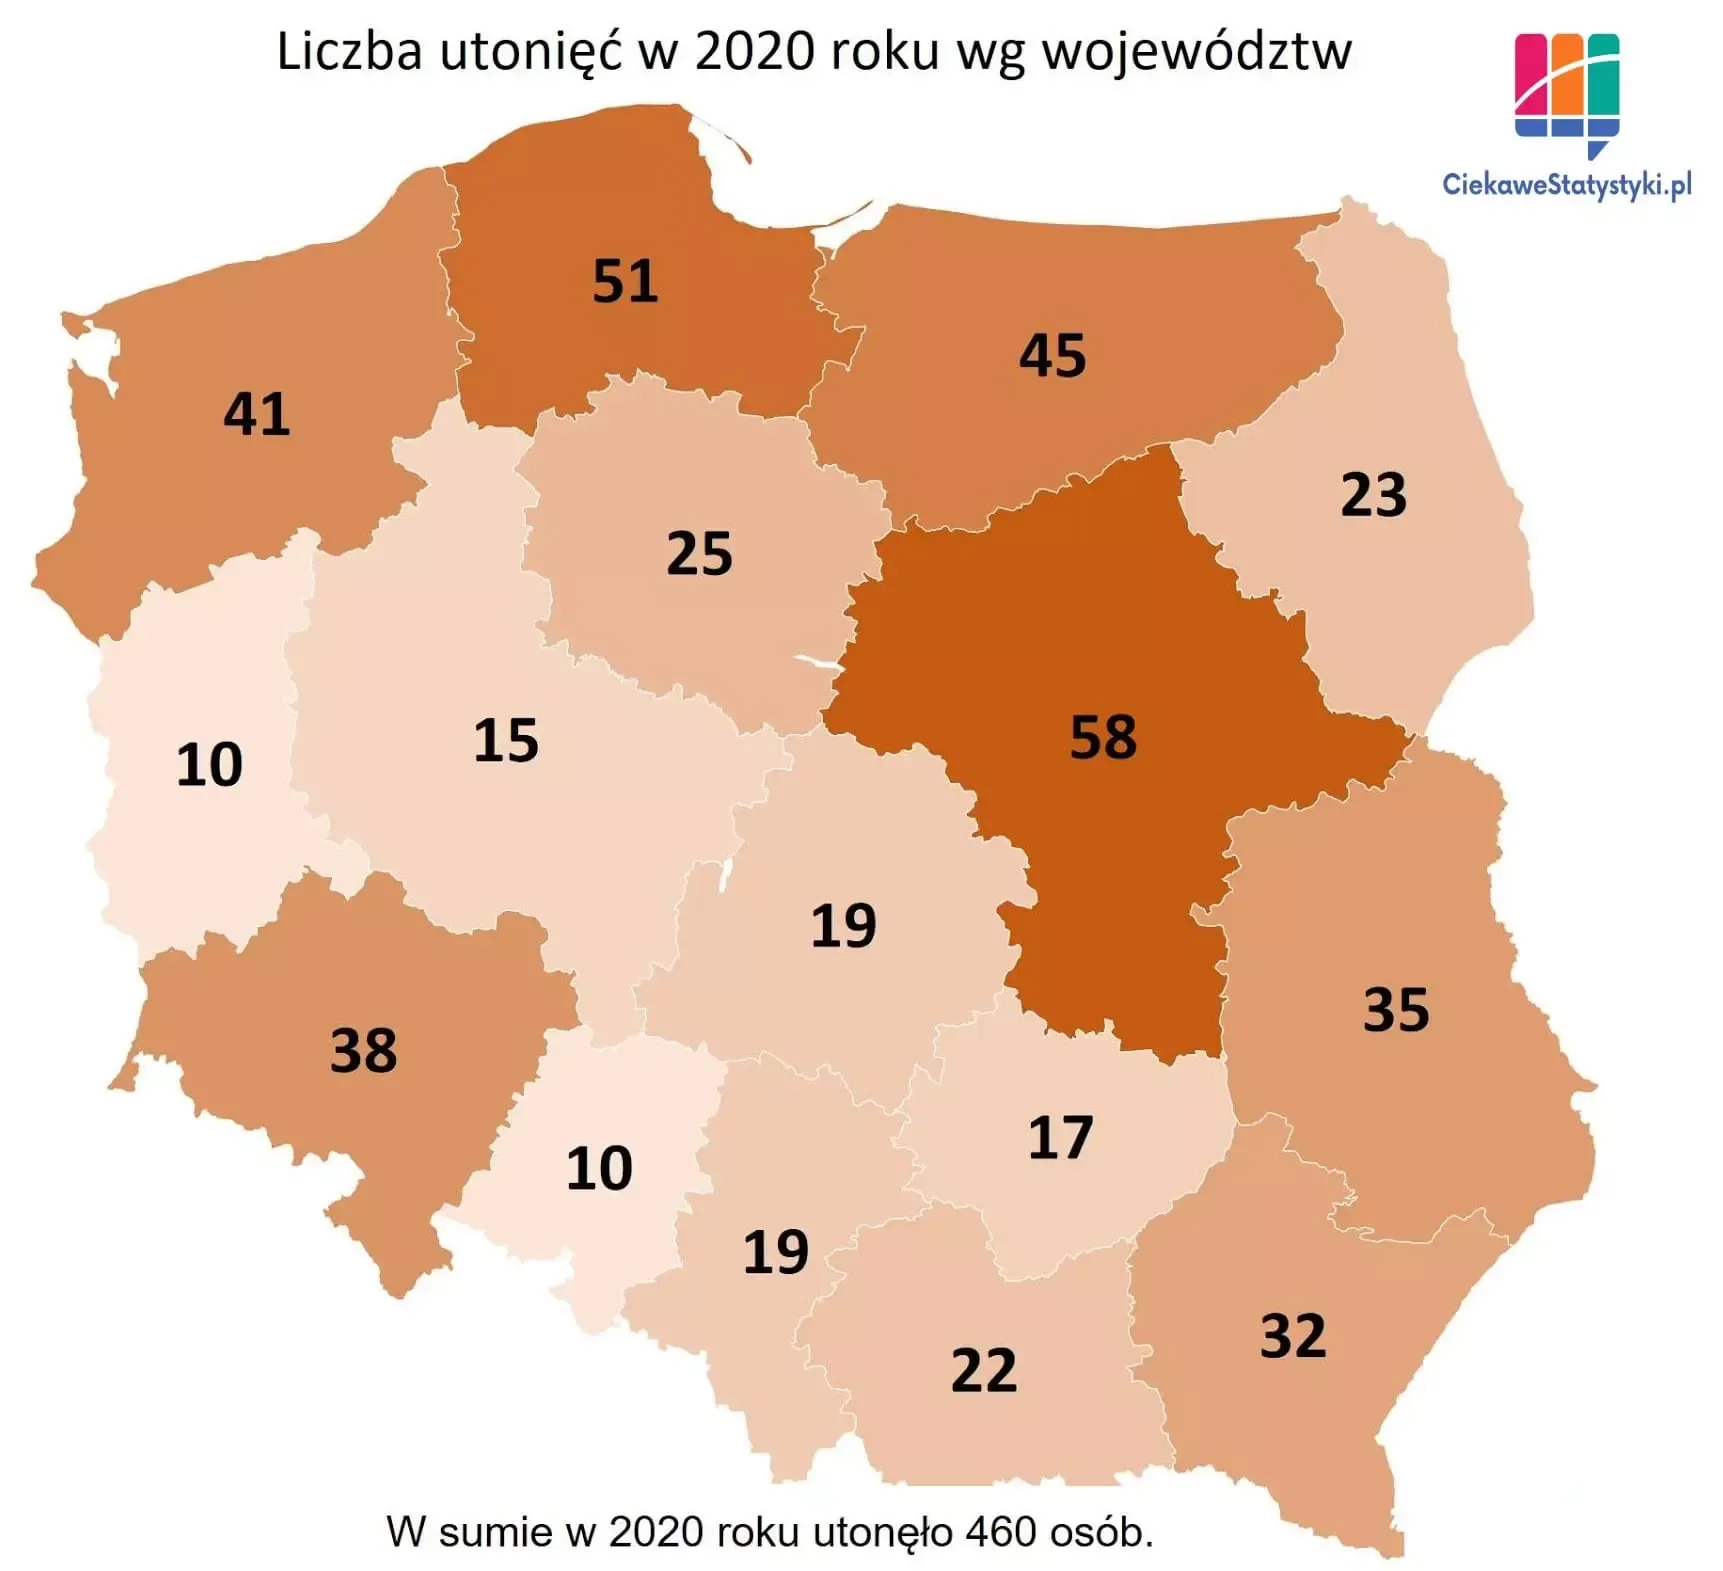 Mapa przedstawia ile osób utonęło w Polsce w poszczególnych województwach